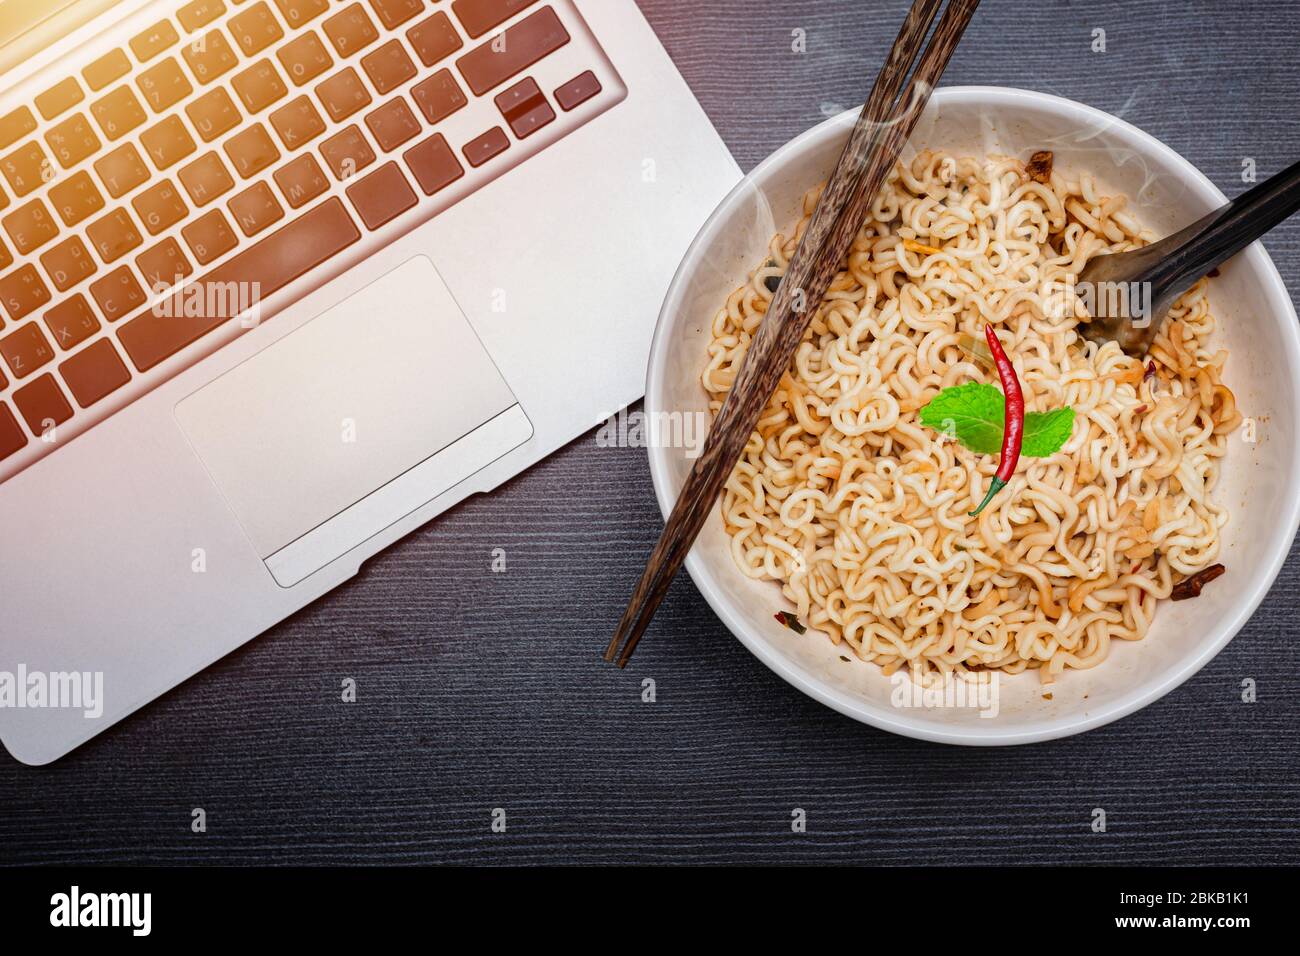 Noodle istantaneo con il computer portatile per mangiare a basso costo e poco sano concetto di alimenti ad alto contenuto di carboidrati. Foto Stock